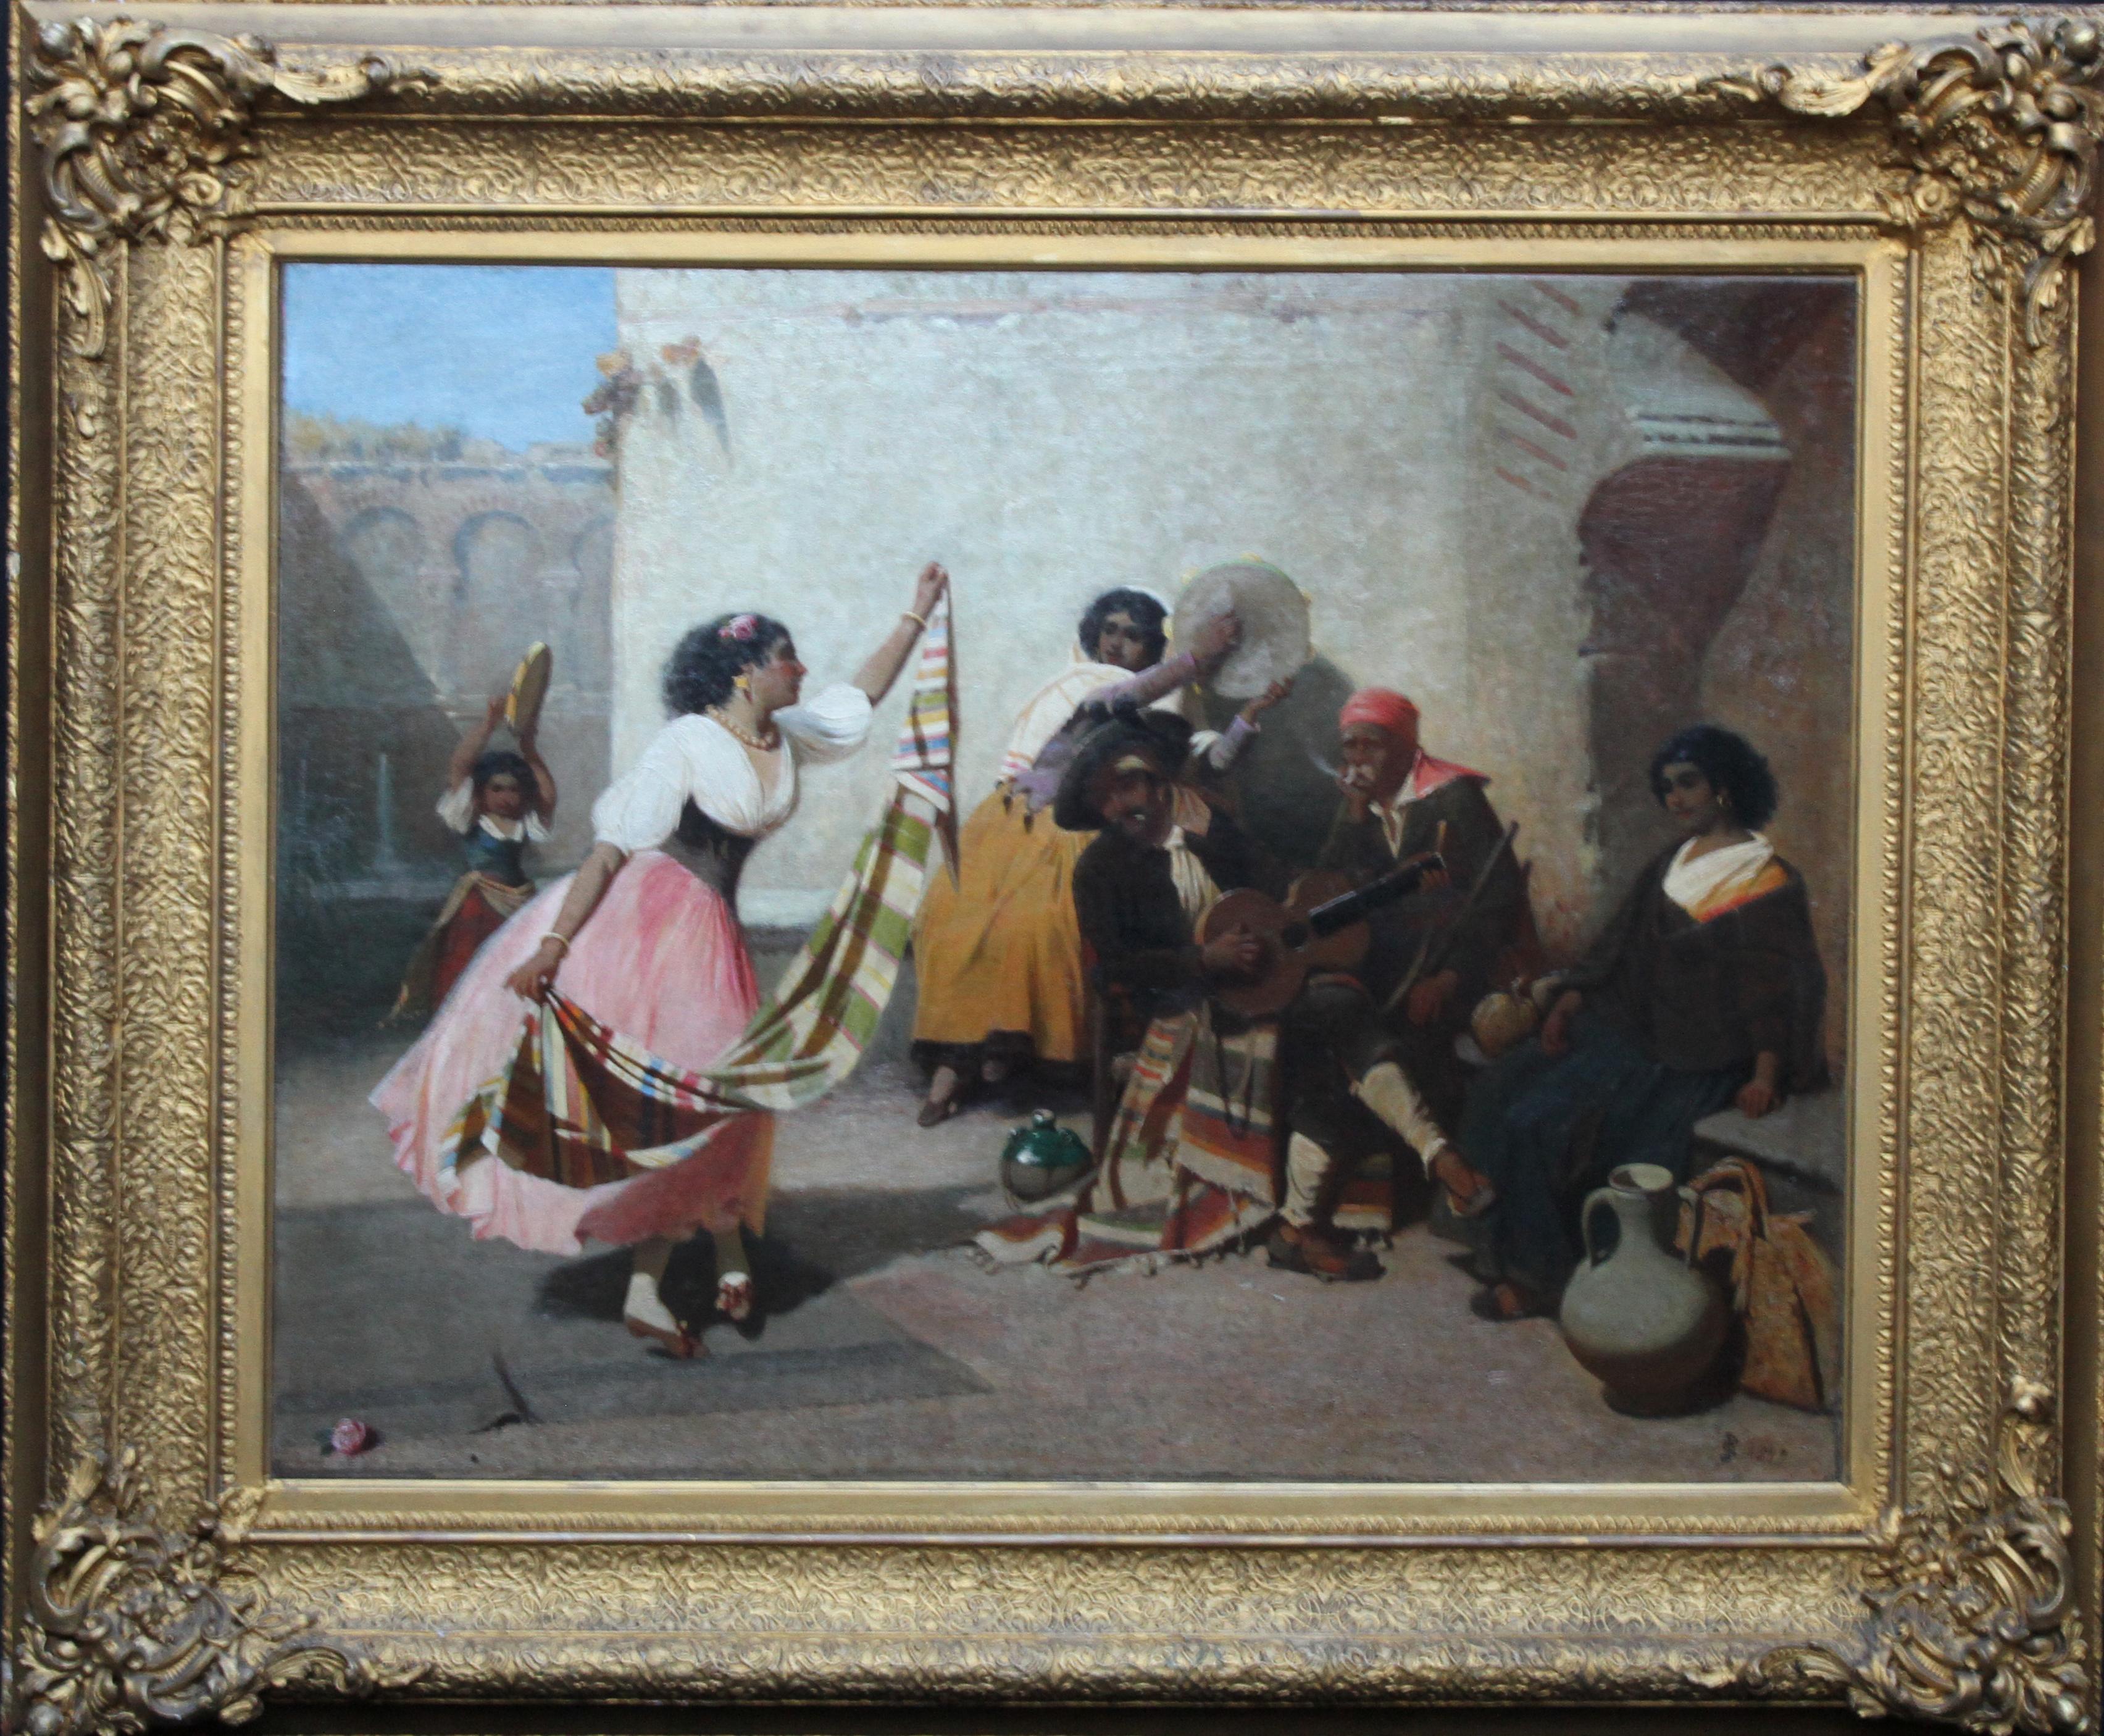 John Phillip Figurative Painting – Spanische Musiker mit tanzendem Mädchen – britisches viktorianisches Ölgemälde, Porträt